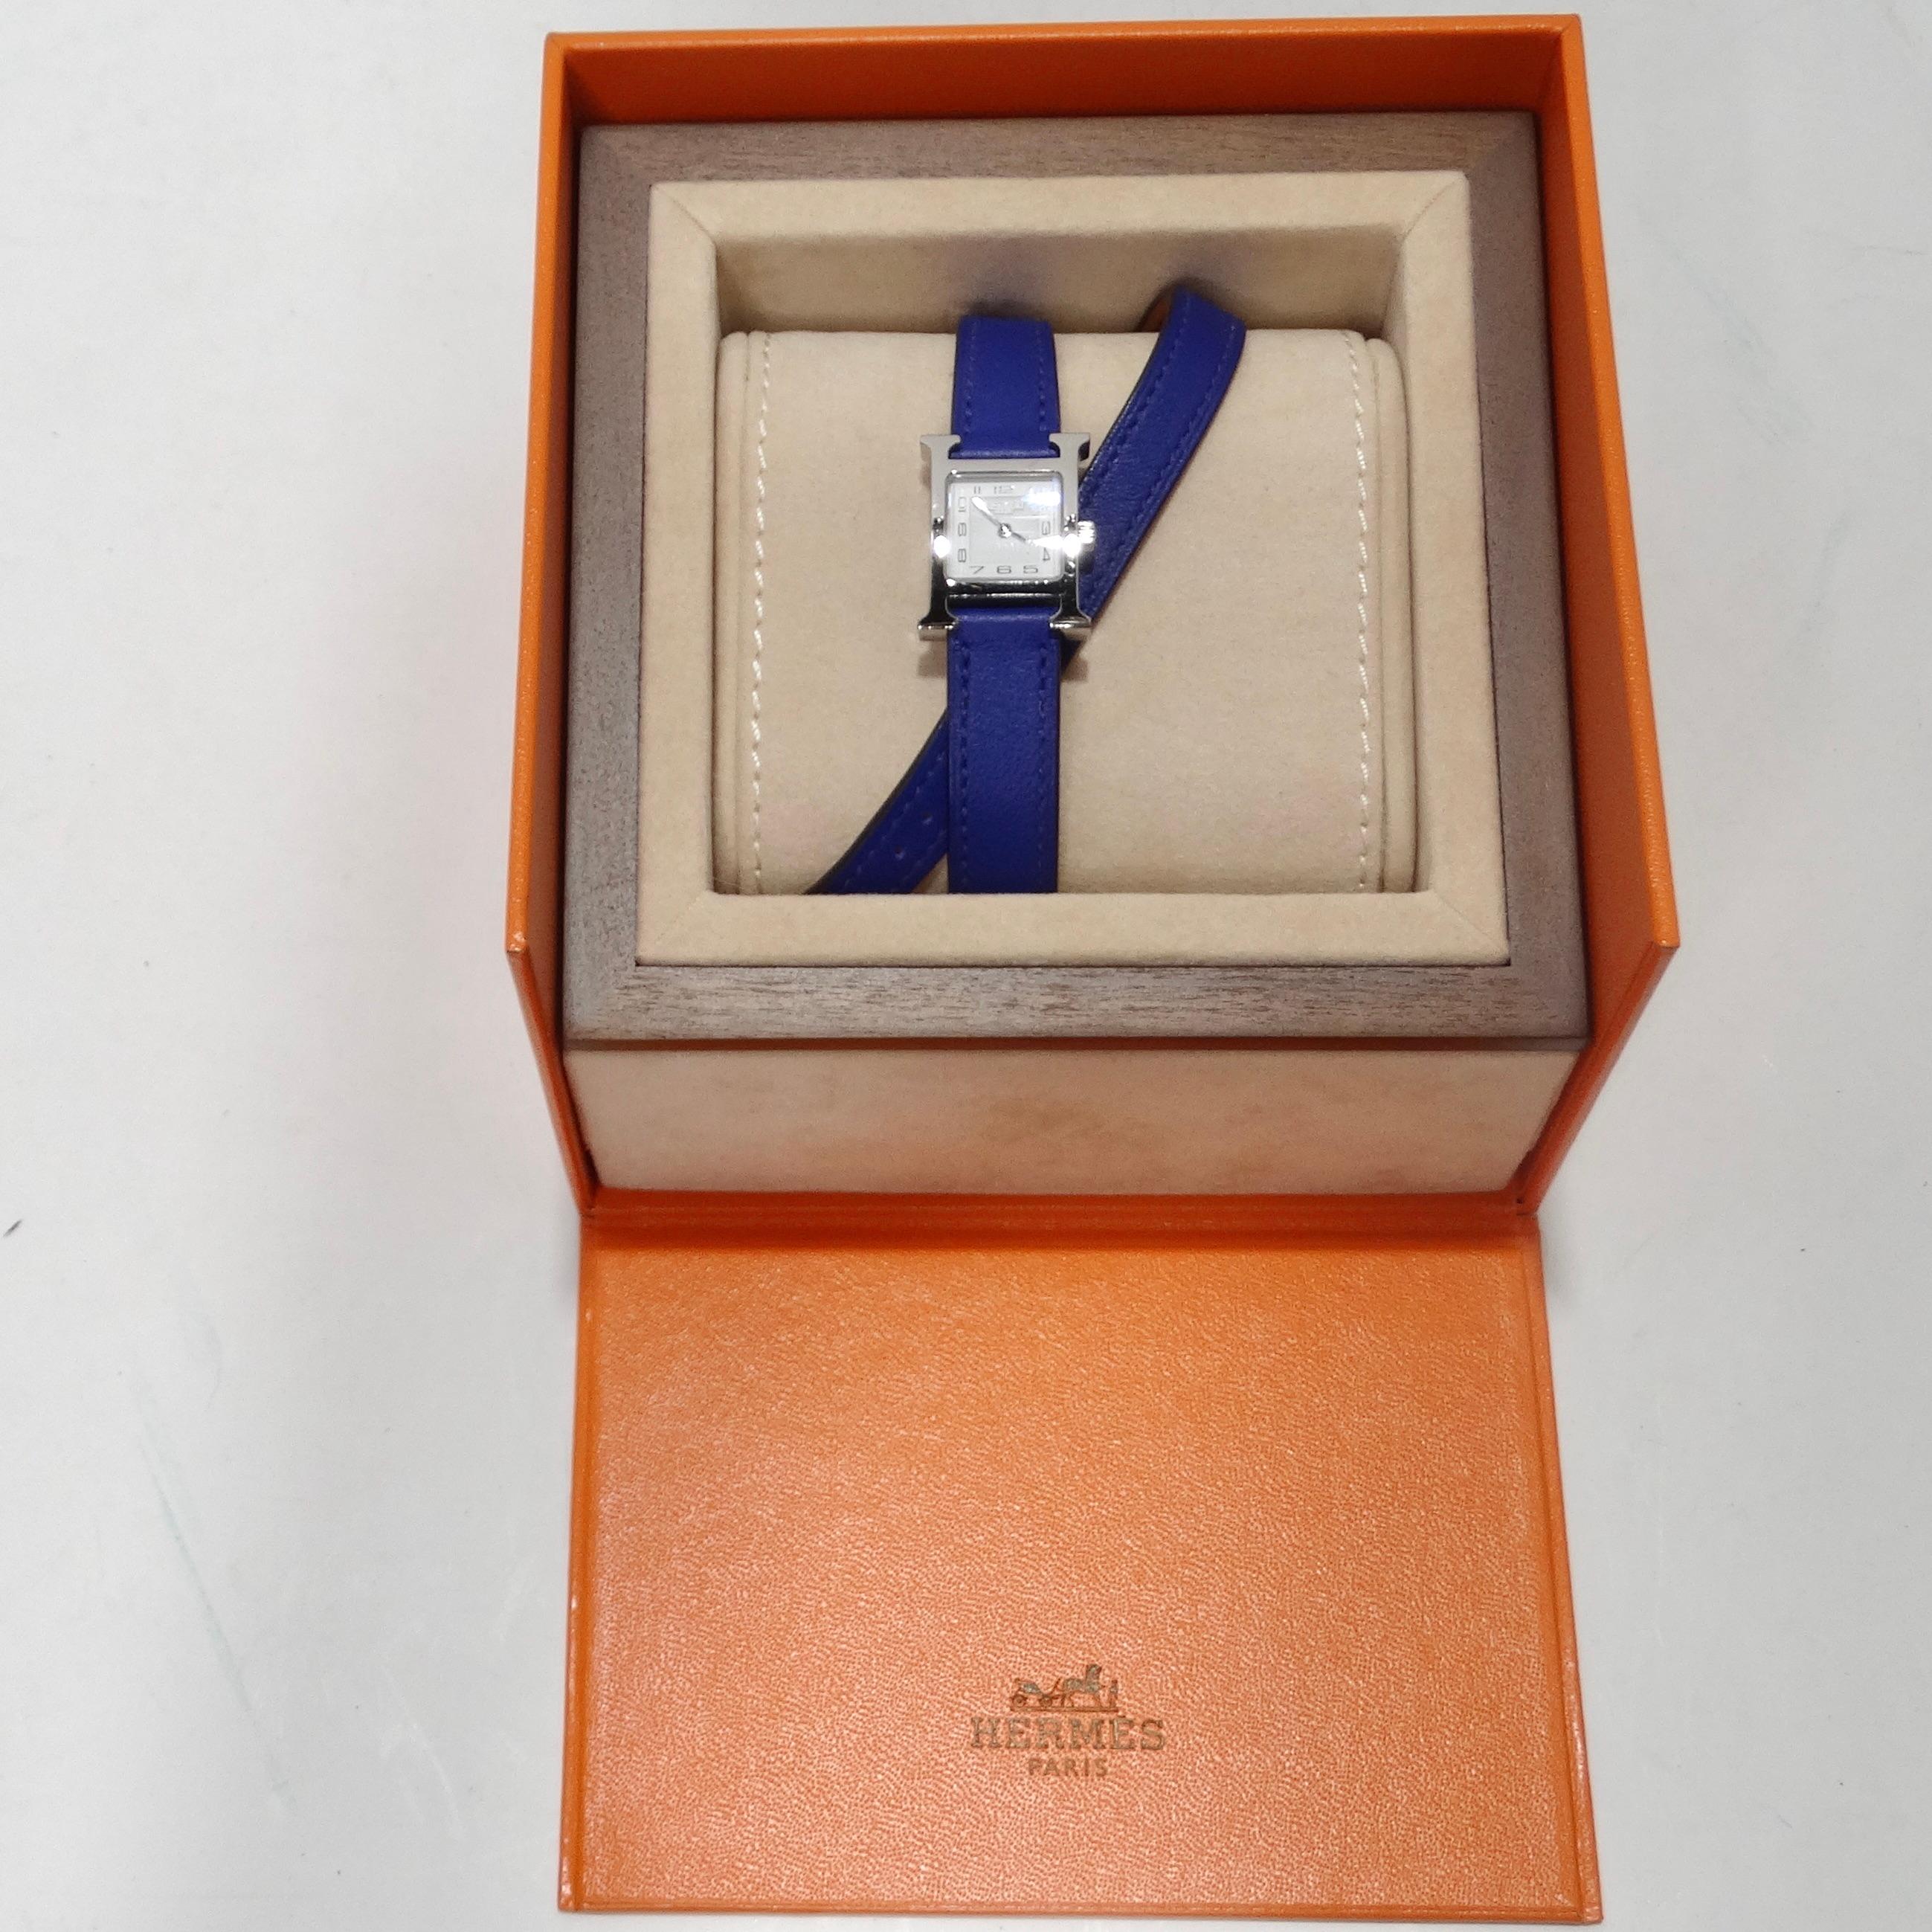 Voici la montre Hermes Heure Hour Double Tour Quartz, un garde-temps qui allie magnifiquement un style unique, une touche de modernité vibrante et le savoir-faire artisanal exquis qui fait la réputation d'Hermes. Le 